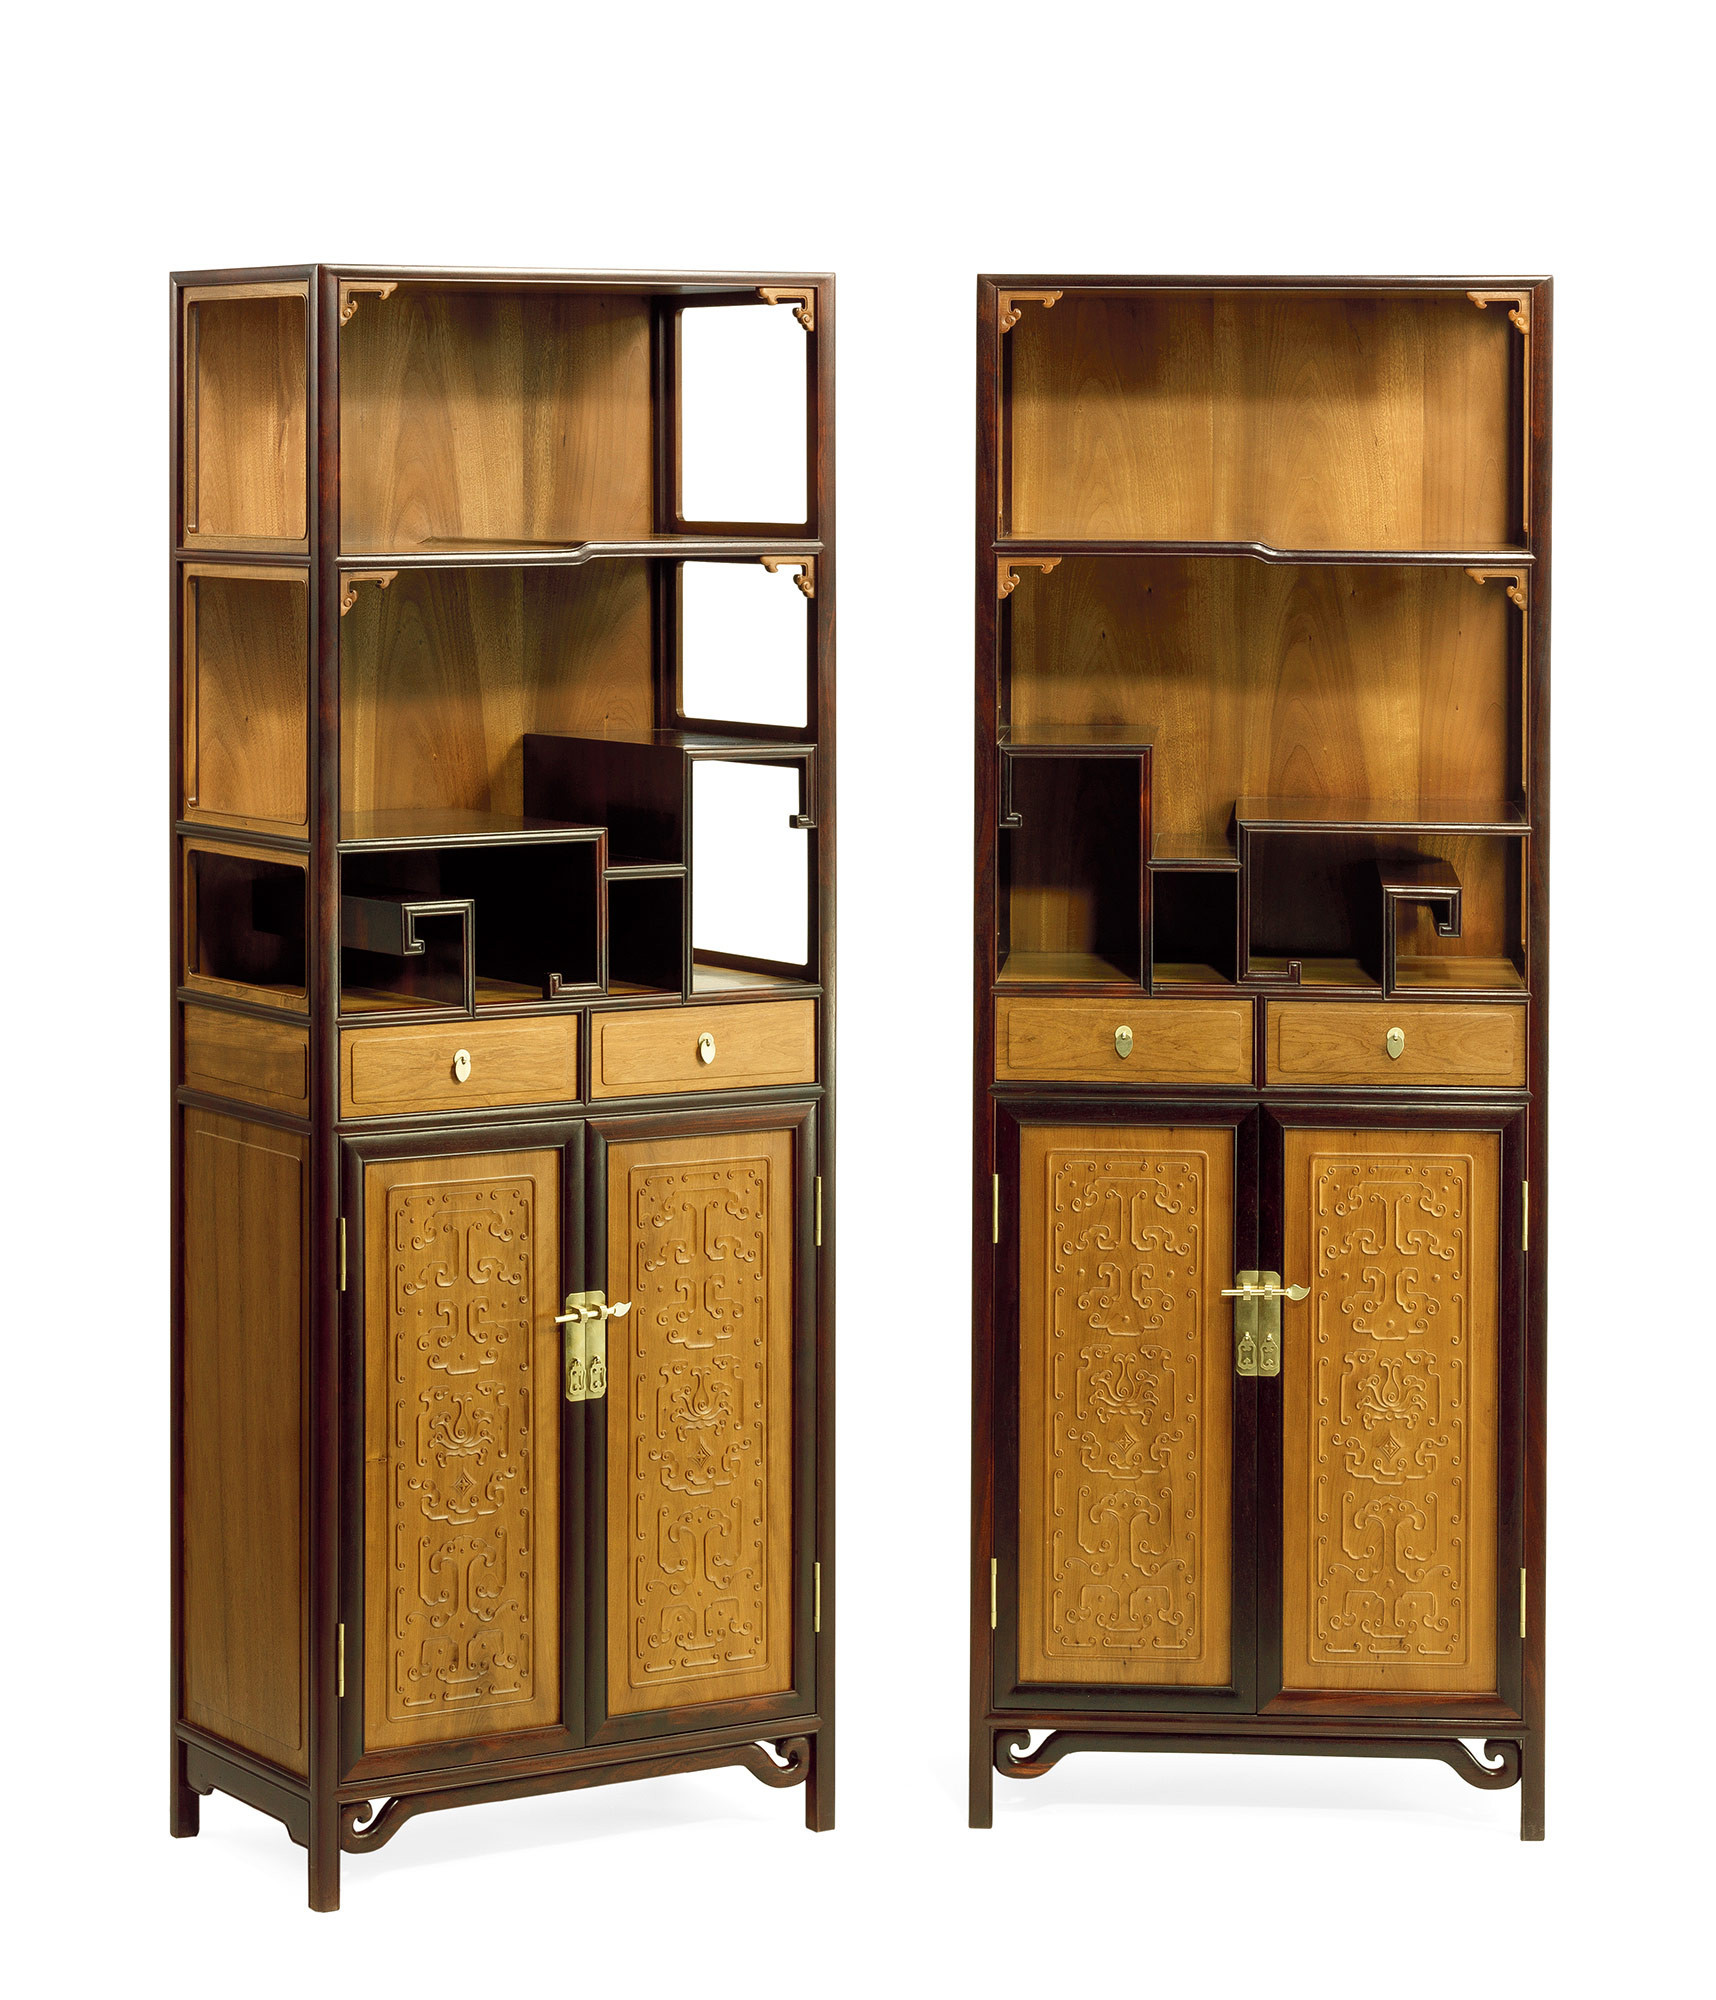 A pair of ZITAN AND JINSINAN-WOOD display cabinets